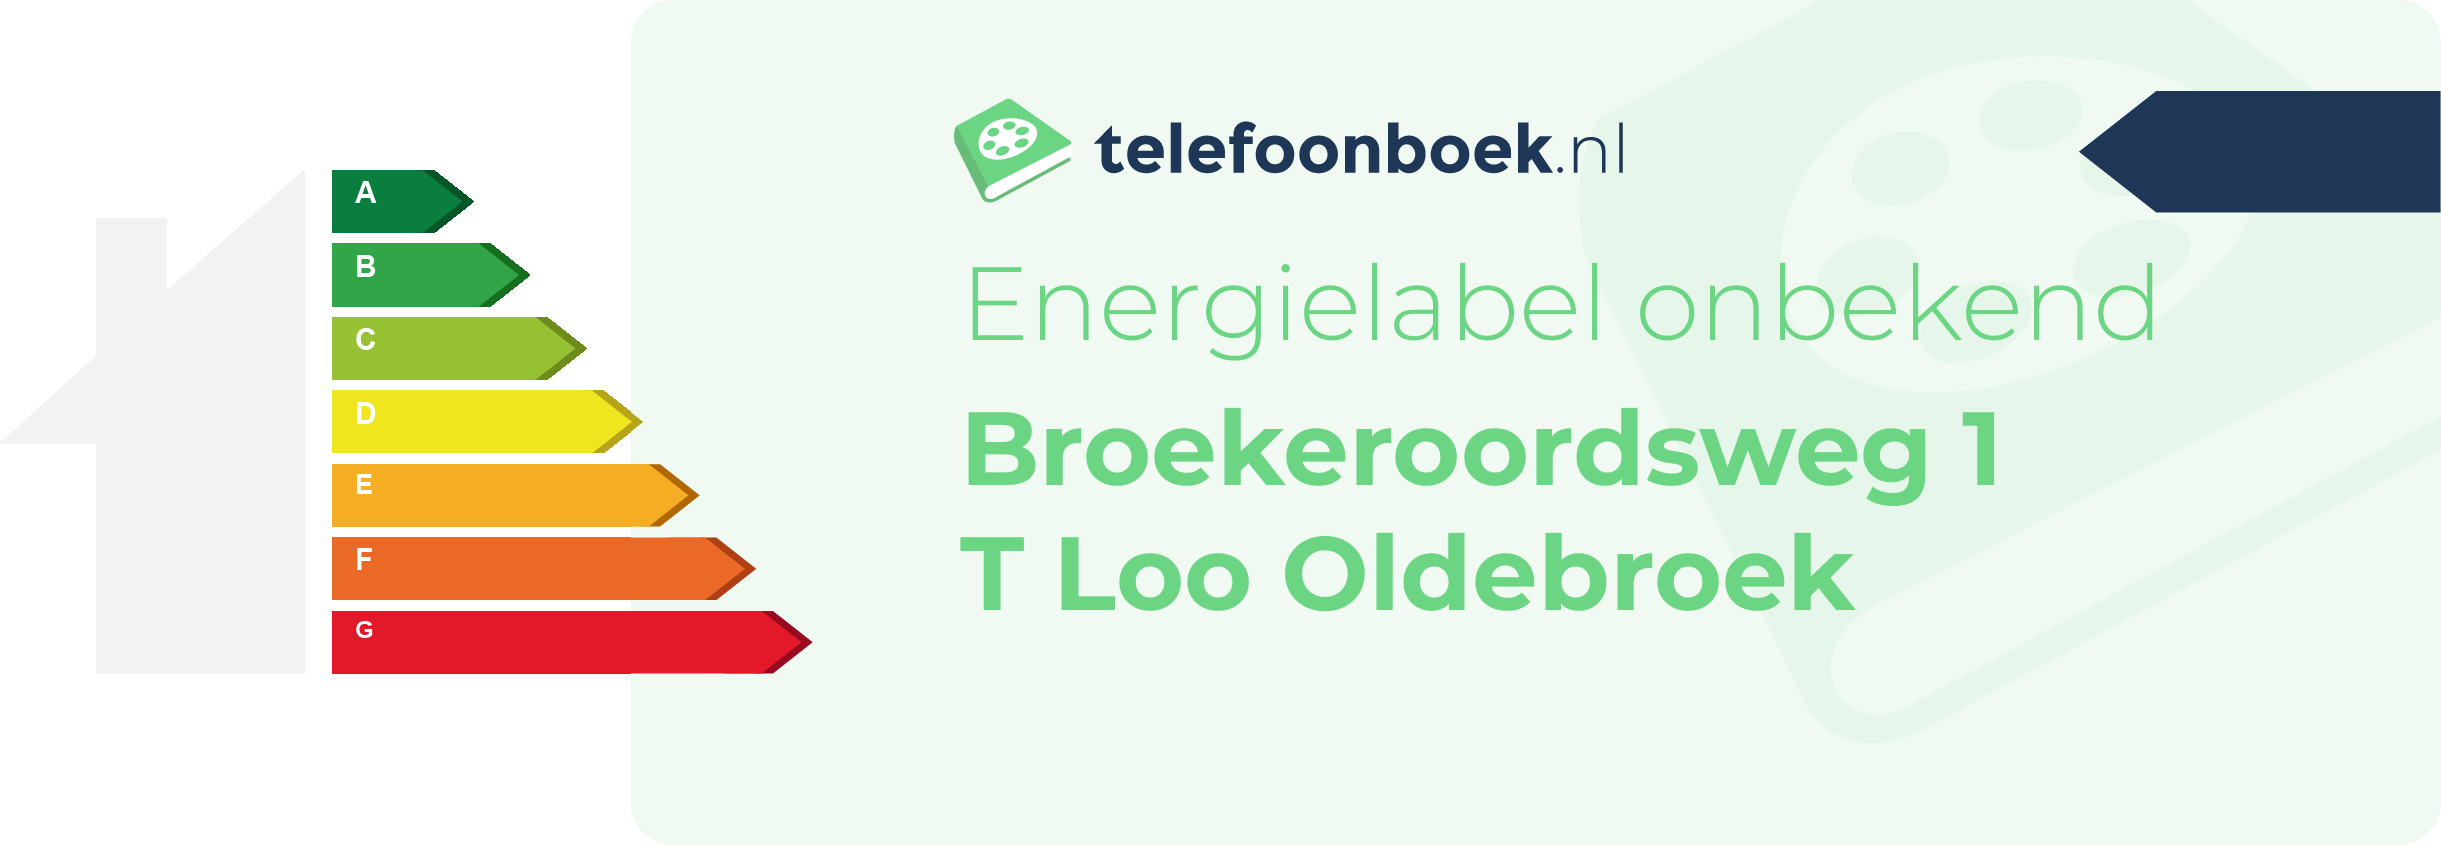 Energielabel Broekeroordsweg 1 T Loo Oldebroek